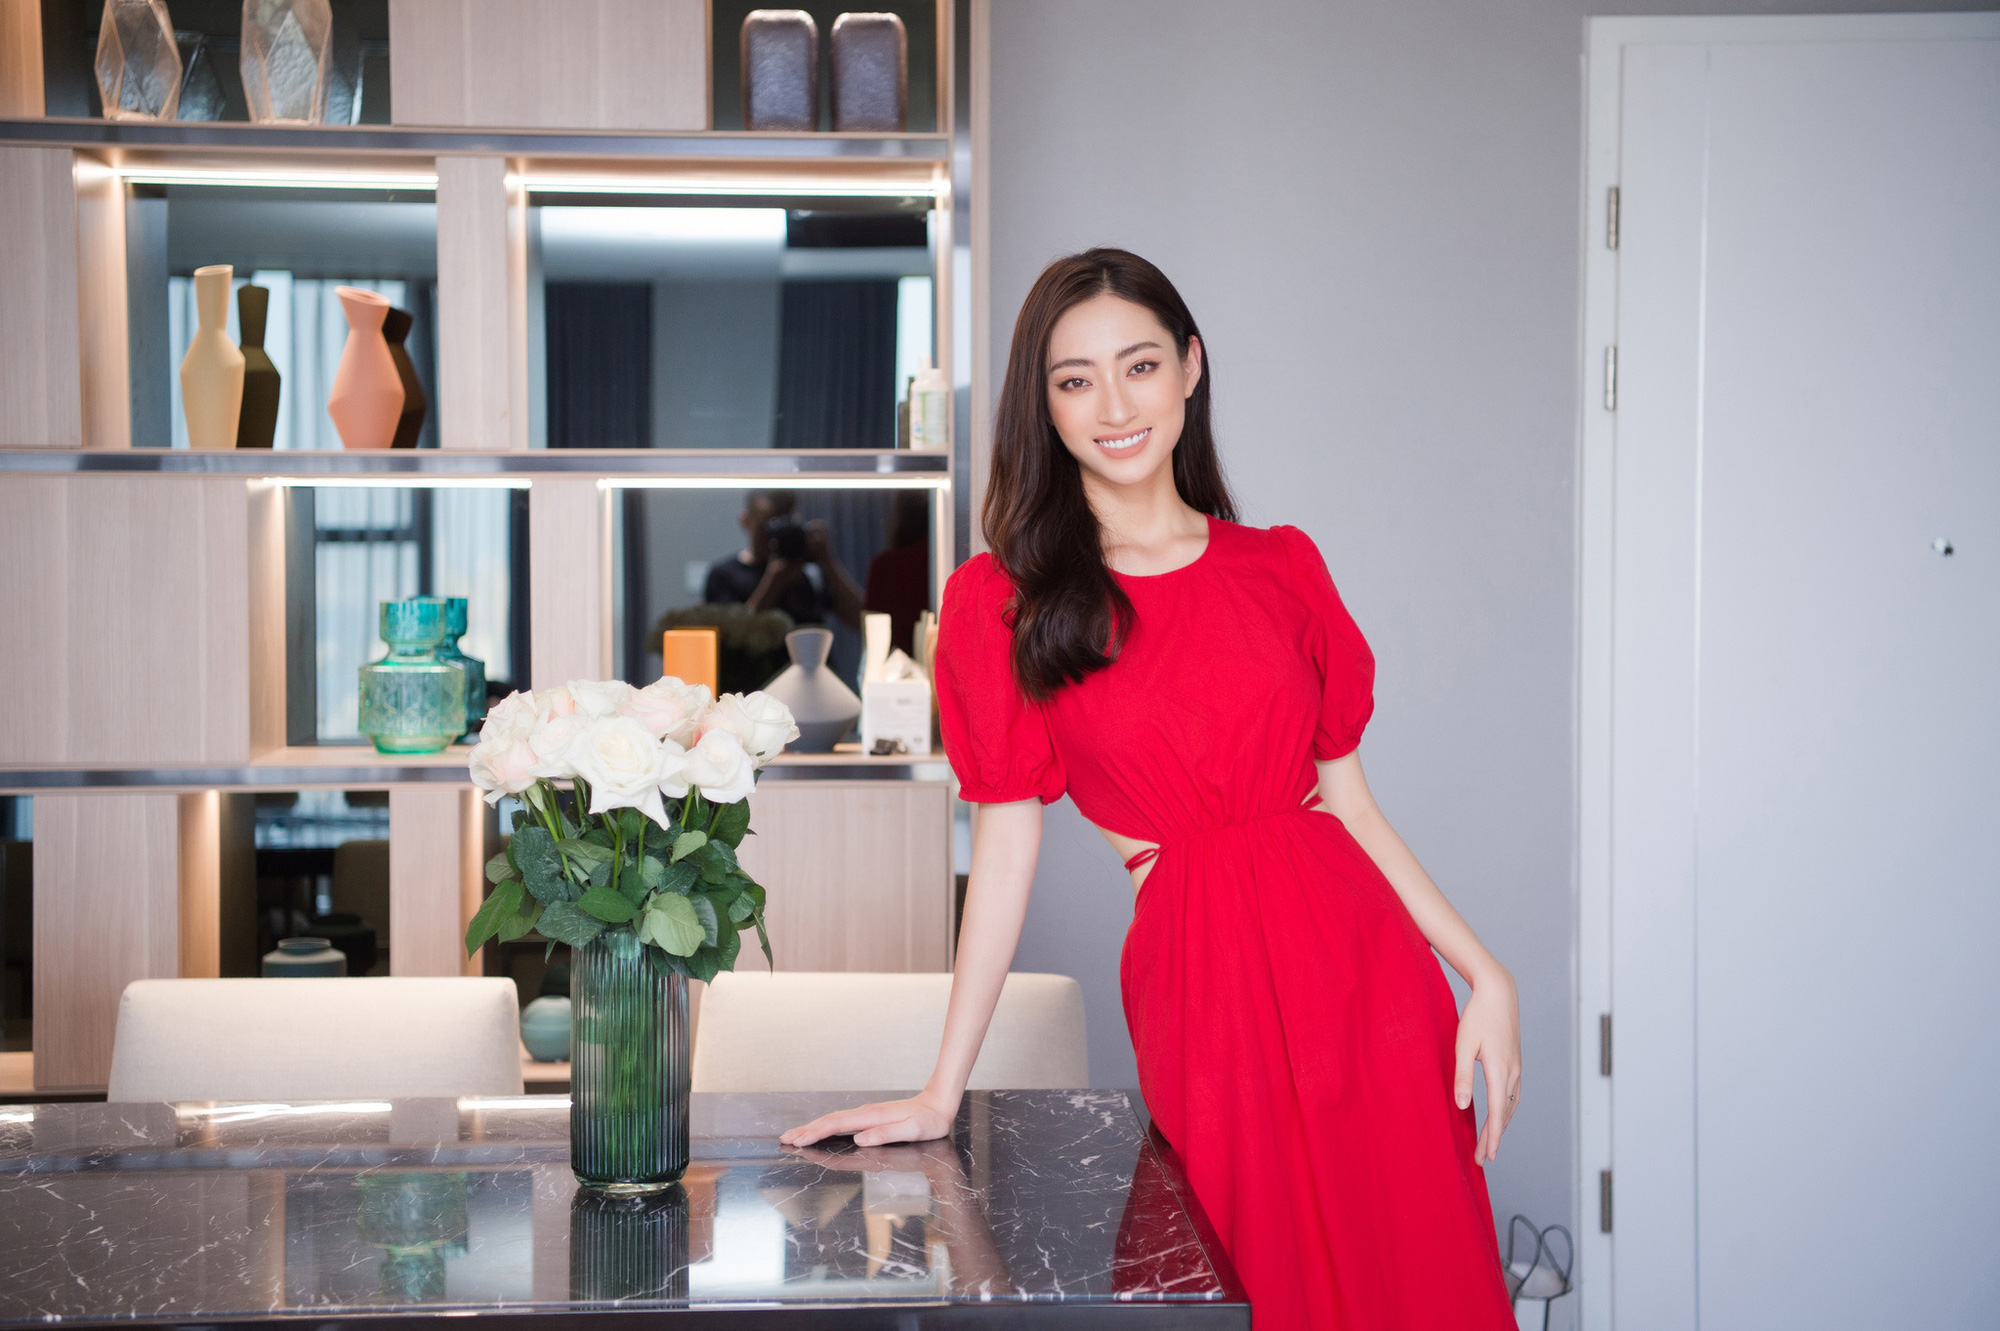 Hoa hậu Lương Thuỳ Linh khoe căn penthouse mới tậu ở tuổi 21, vị trí đắc địa bao trọn góc view đắt giá nhất Hà Nội - Ảnh 7.